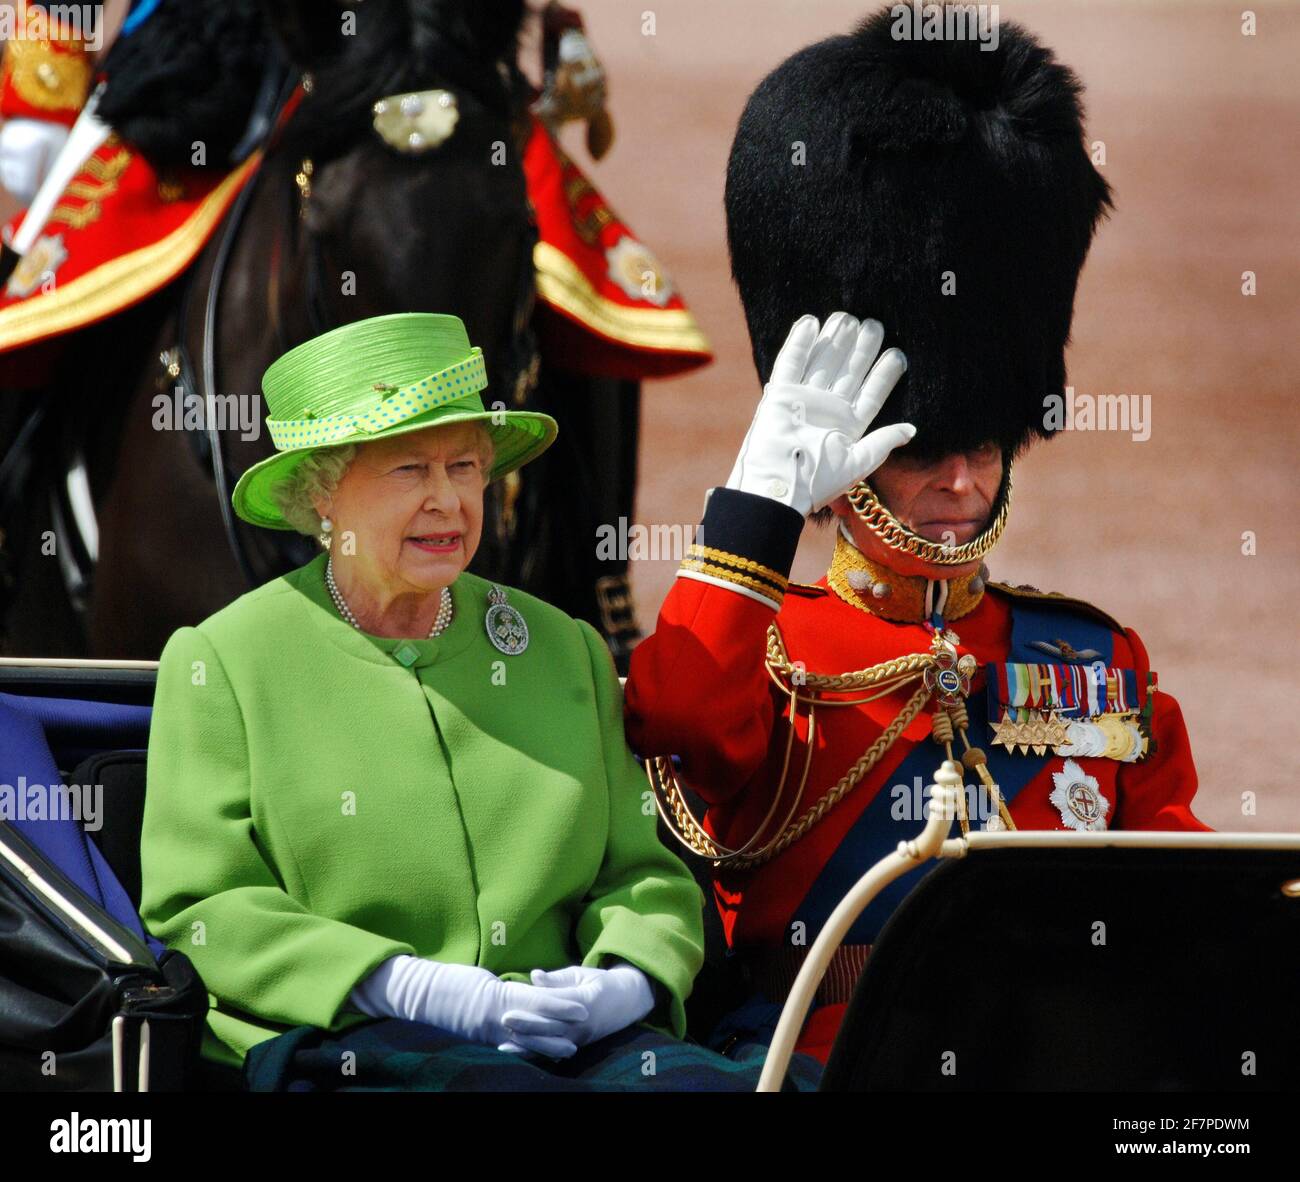 Foto del archivo del 06/07/16 del Duque de Edimburgo y de la Reina Isabel II en un carro de techo abierto, ya que participan en la ceremonia anual Trooping the Color. El Duque de Edimburgo ha muerto, ha anunciado el Palacio de Buckingham. Fecha de emisión: Viernes 9 de abril de 2020.. Ver historia de la AP MUERTE Philip. El crédito de la foto debe ser: Fiona Hanson/PA Wire Foto de stock